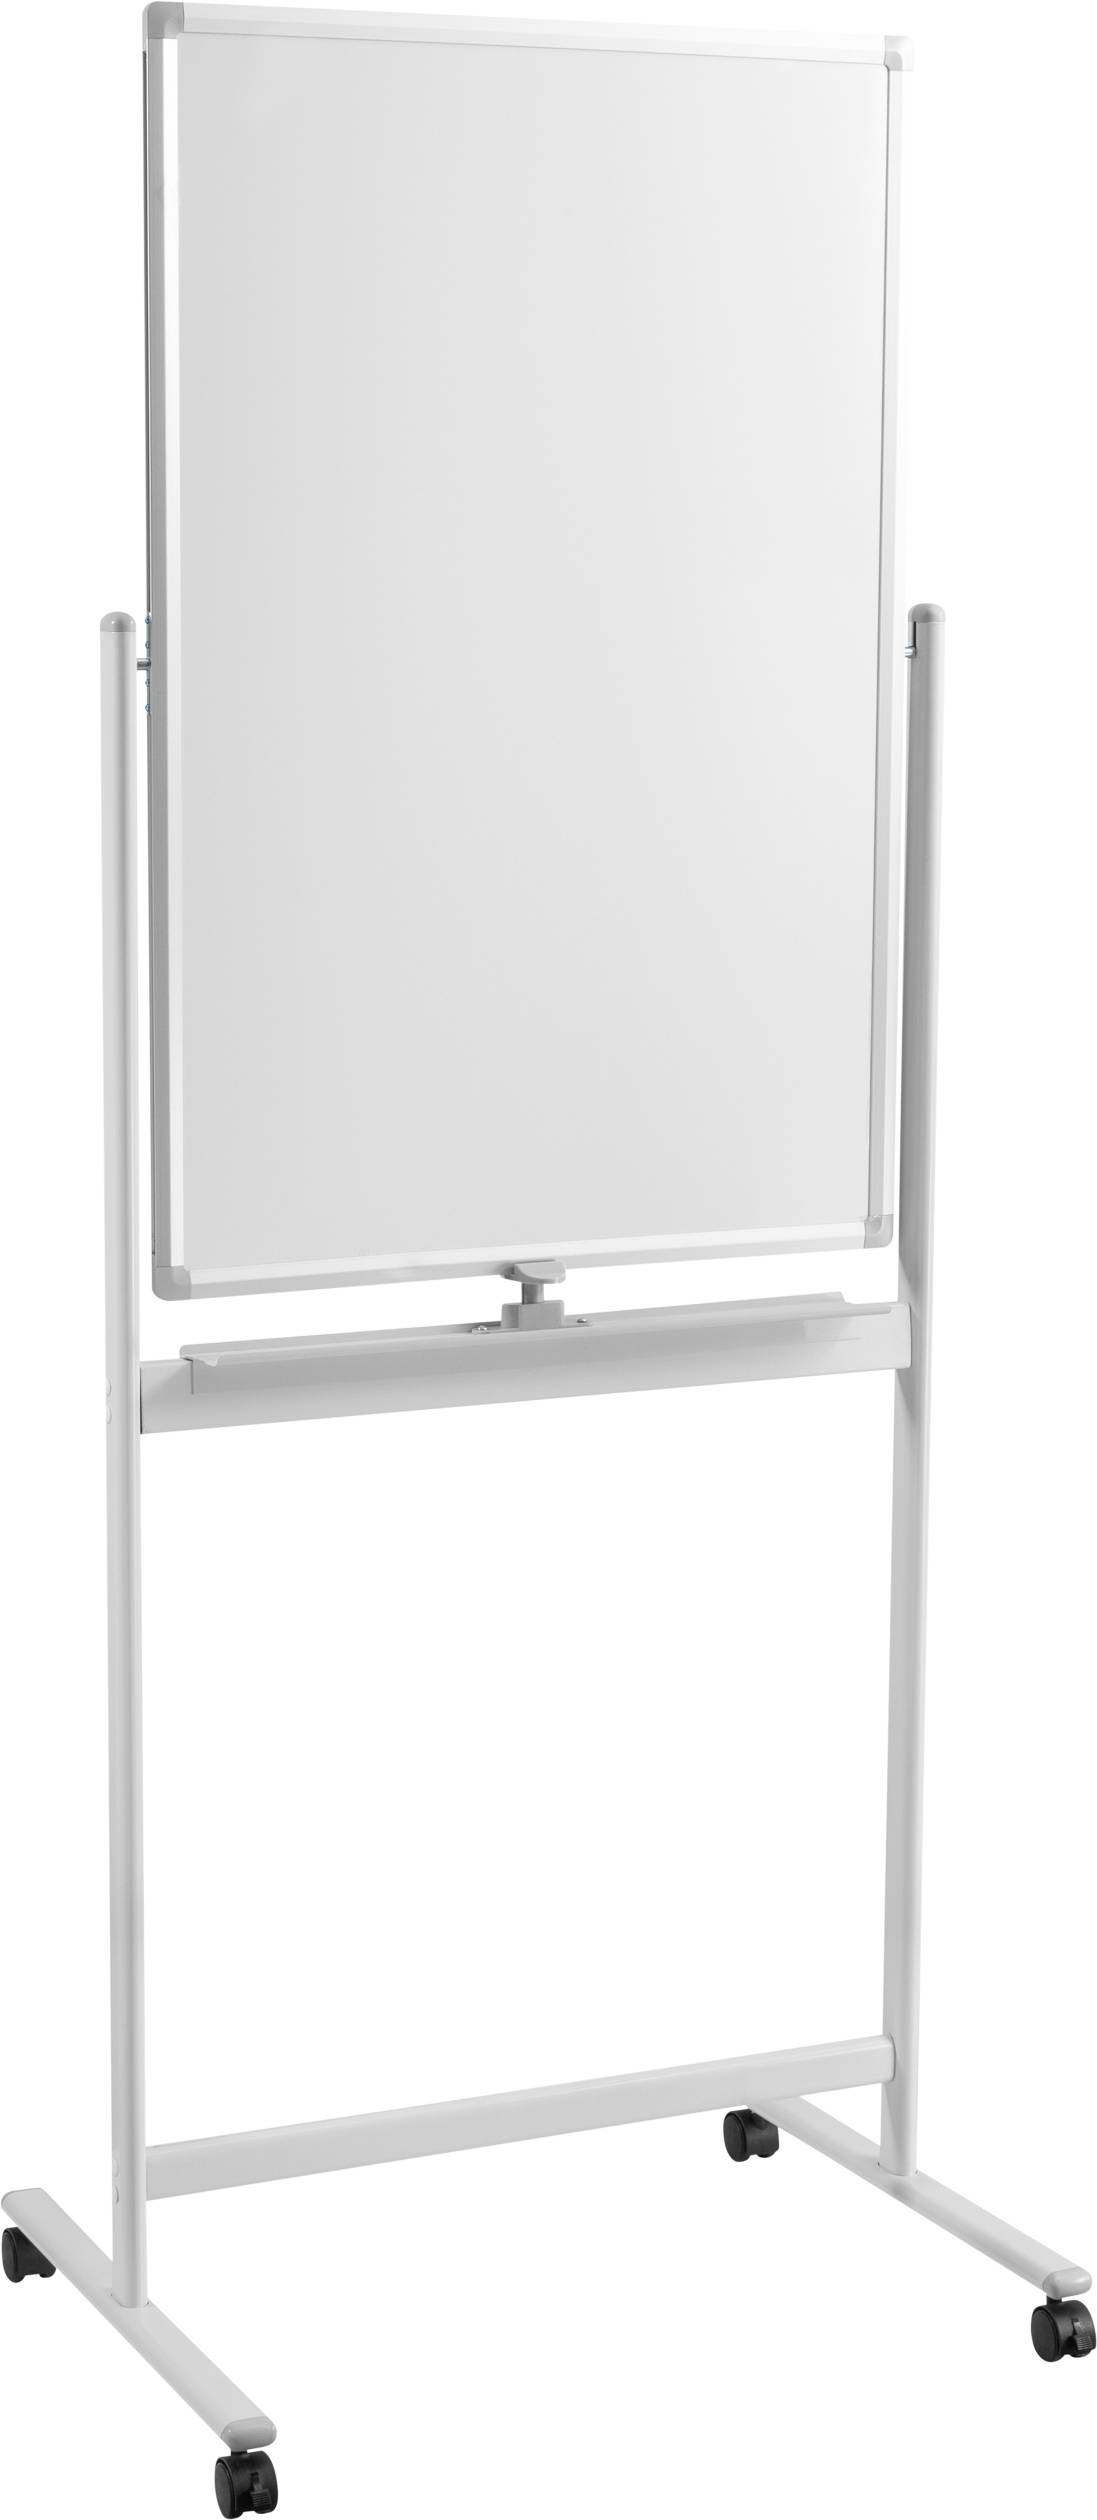 SPEAKA PROFESSIONAL Whiteboard SP-WB-309 (B x H) 600 mm x 900 mm Weiß Hochformat, Beide Seite